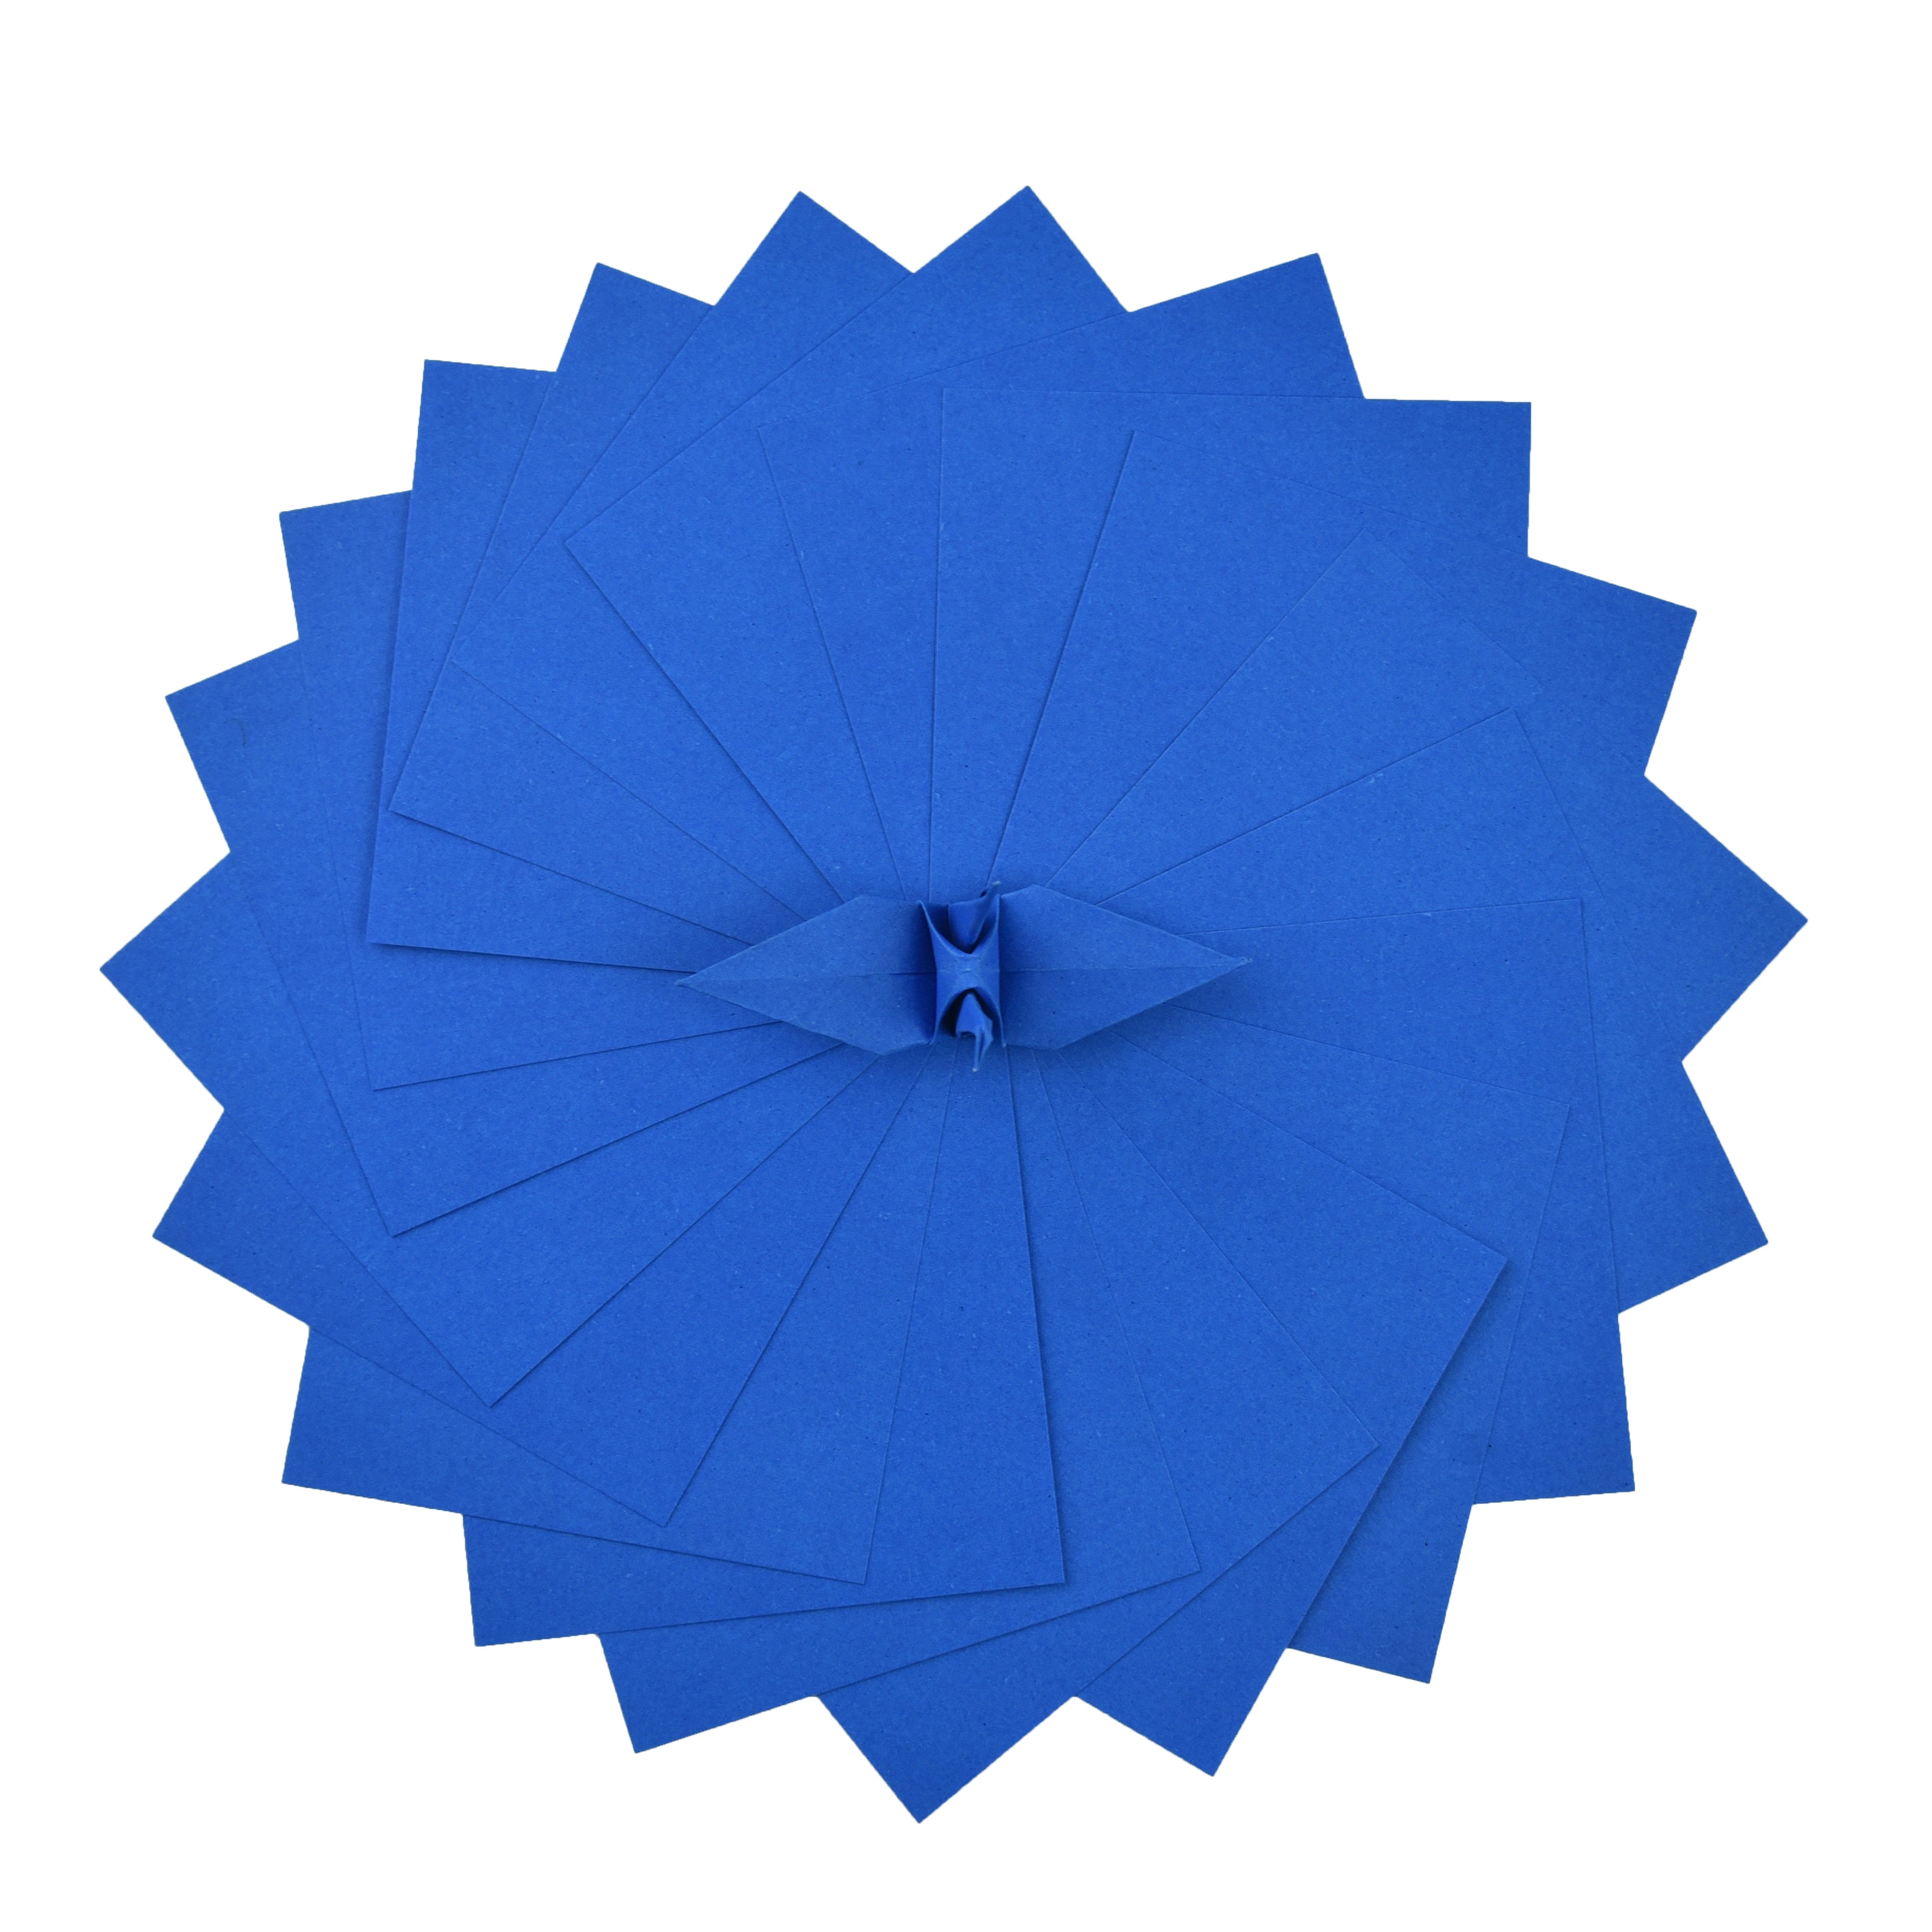 100 fogli di carta origami - 6x6 pollici - Confezione di carta quadrata per piegare, gru origami e decorazioni - S19